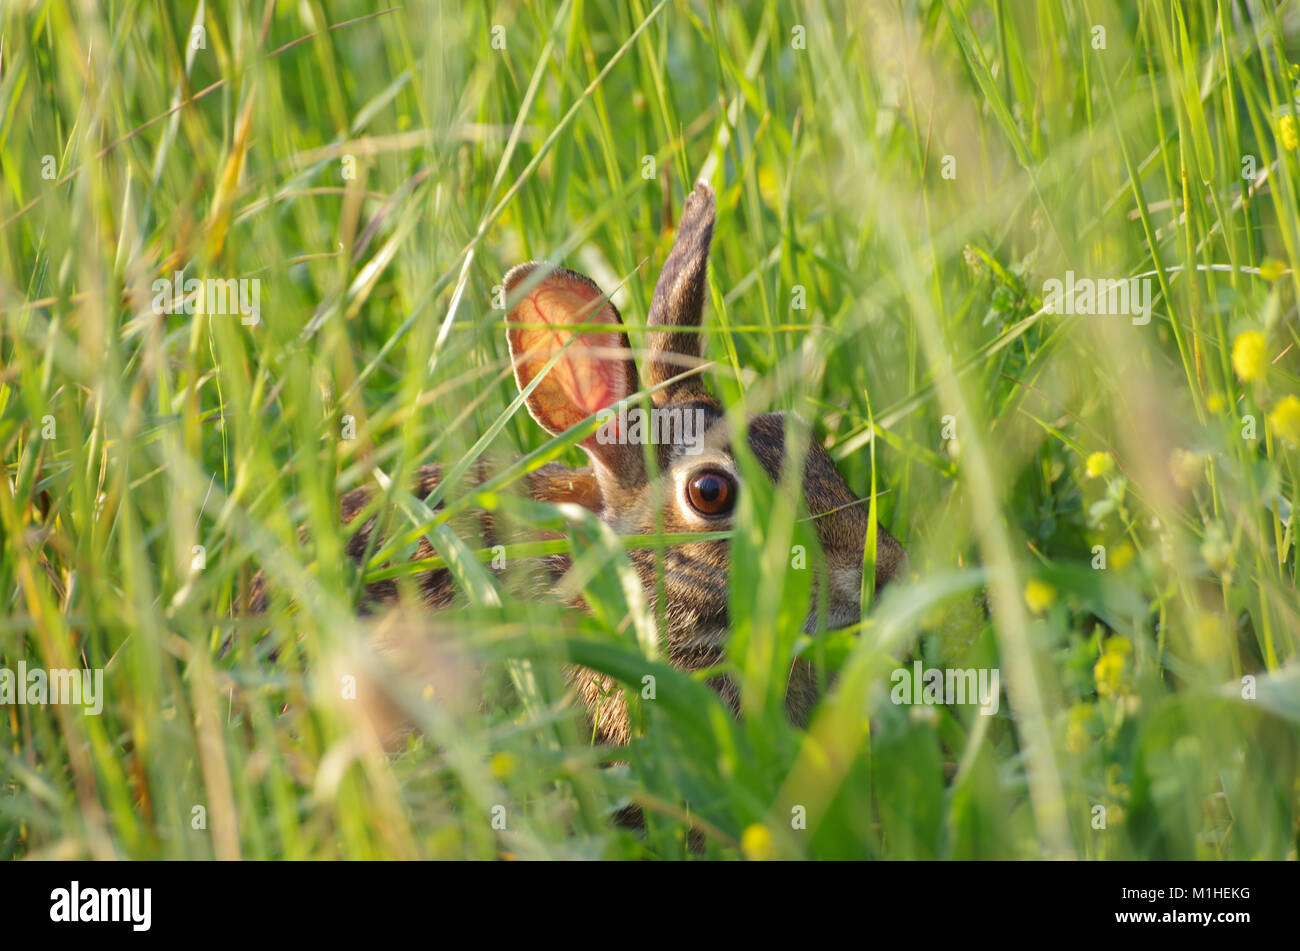 conejo-escondido-en-la-hierba-alta-m1hekg.jpg